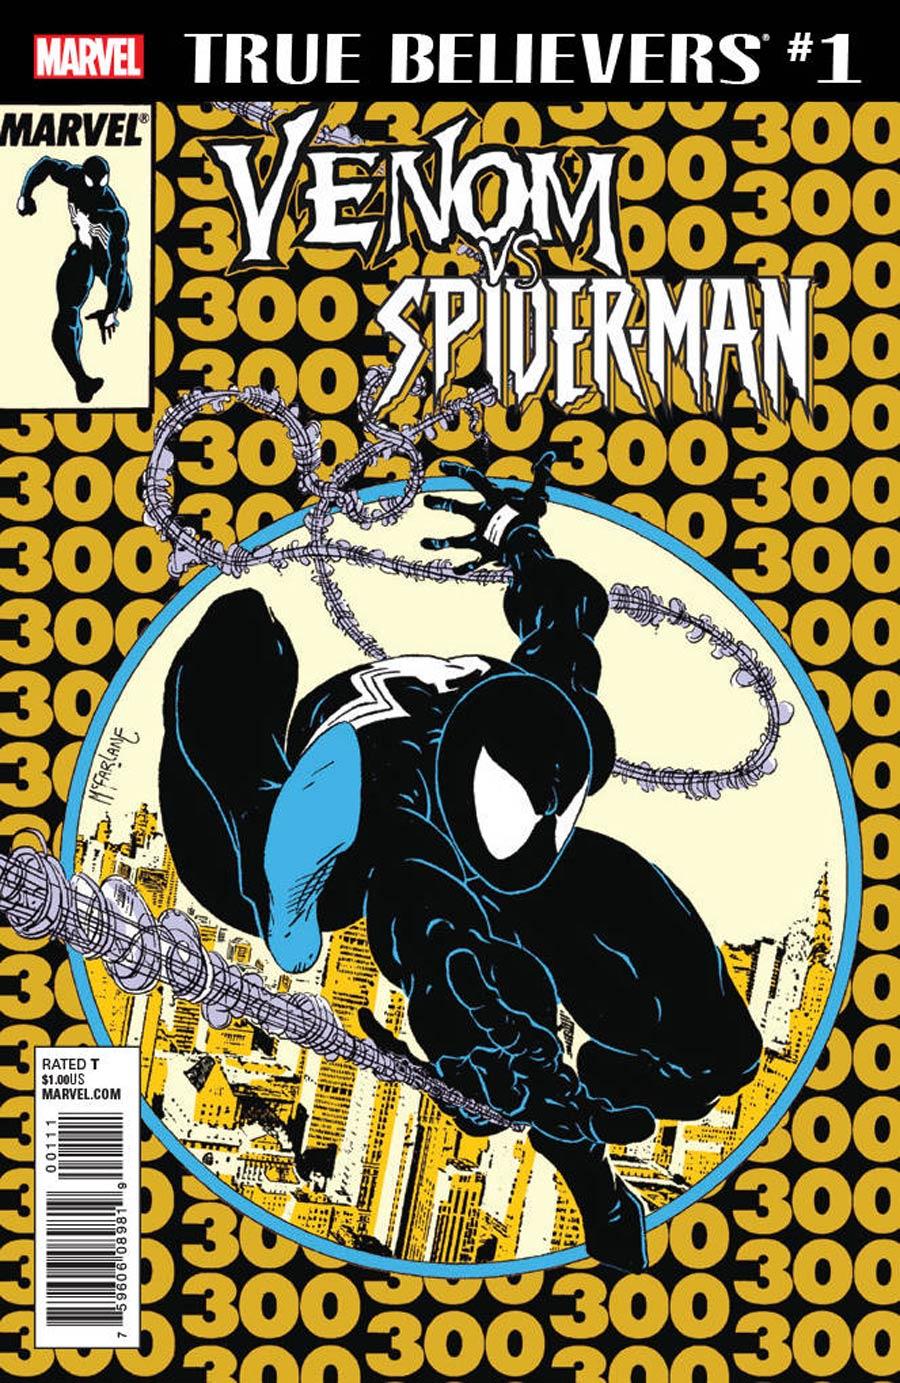 True Believers Venom vs Spider-Man Vol. 1 #1